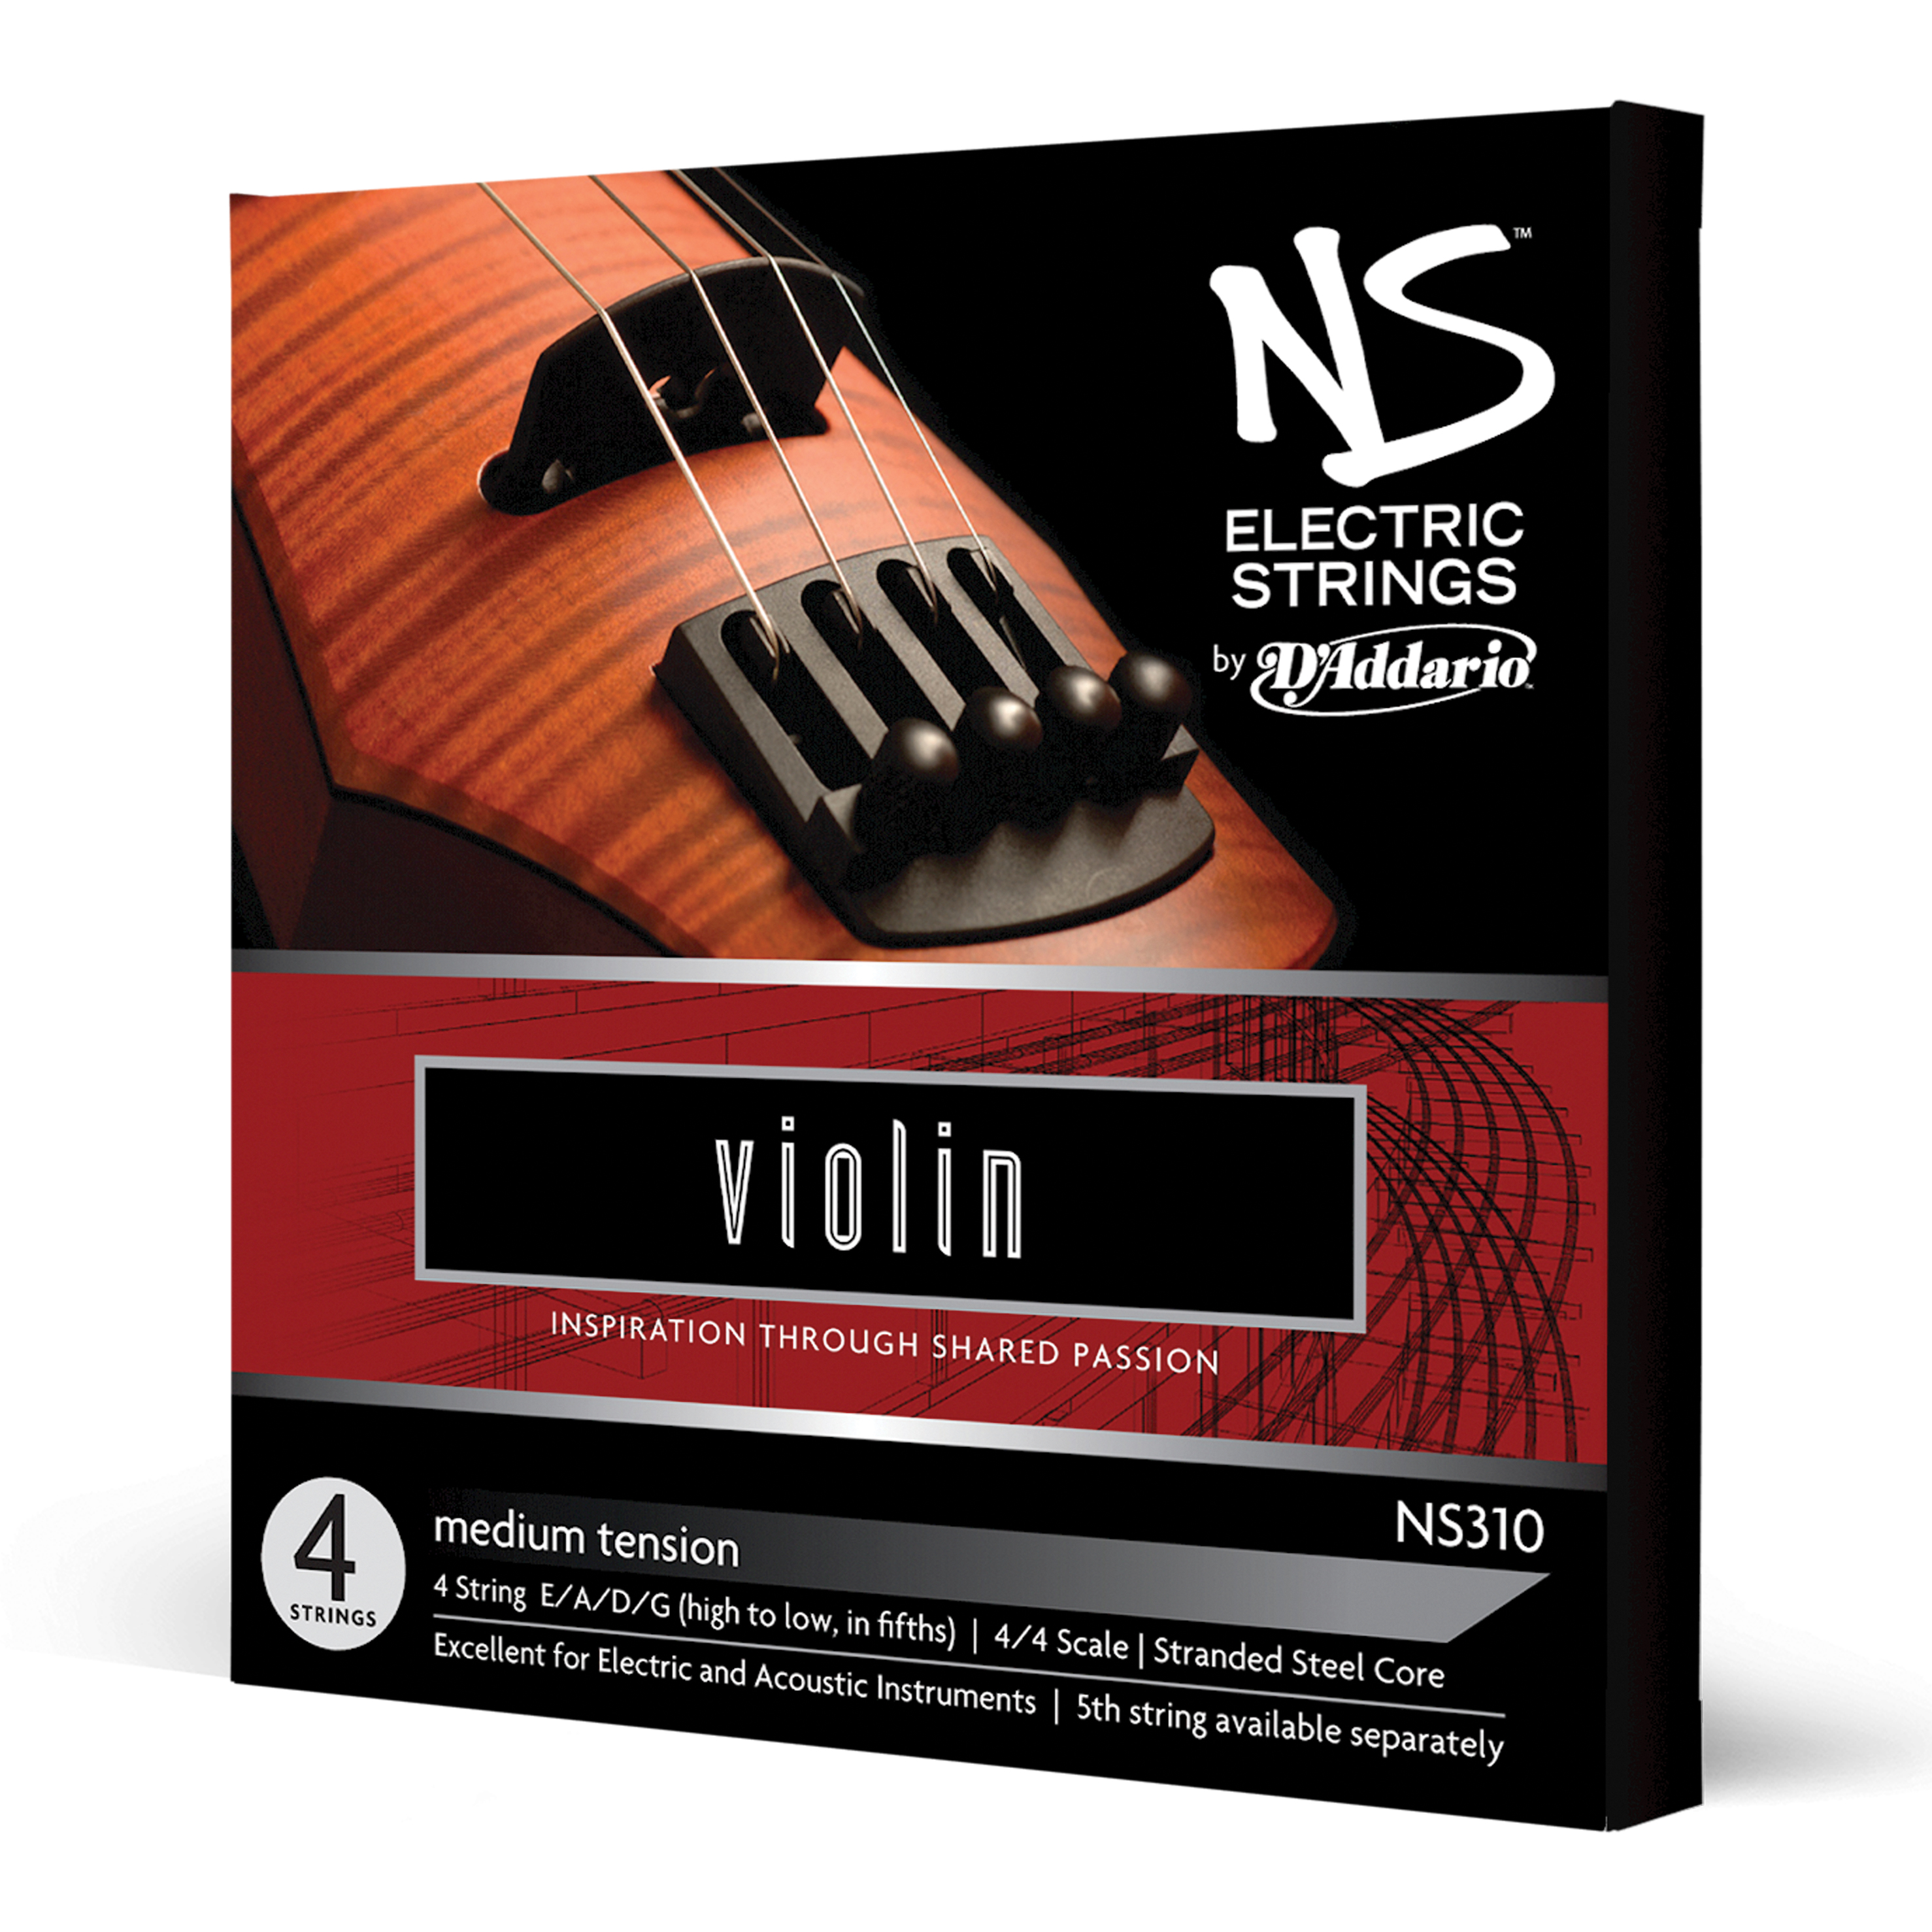 Daddario orchestral it Ns310 set di corde d'addario ns per violino elettrico, scala 4/4, tensione media